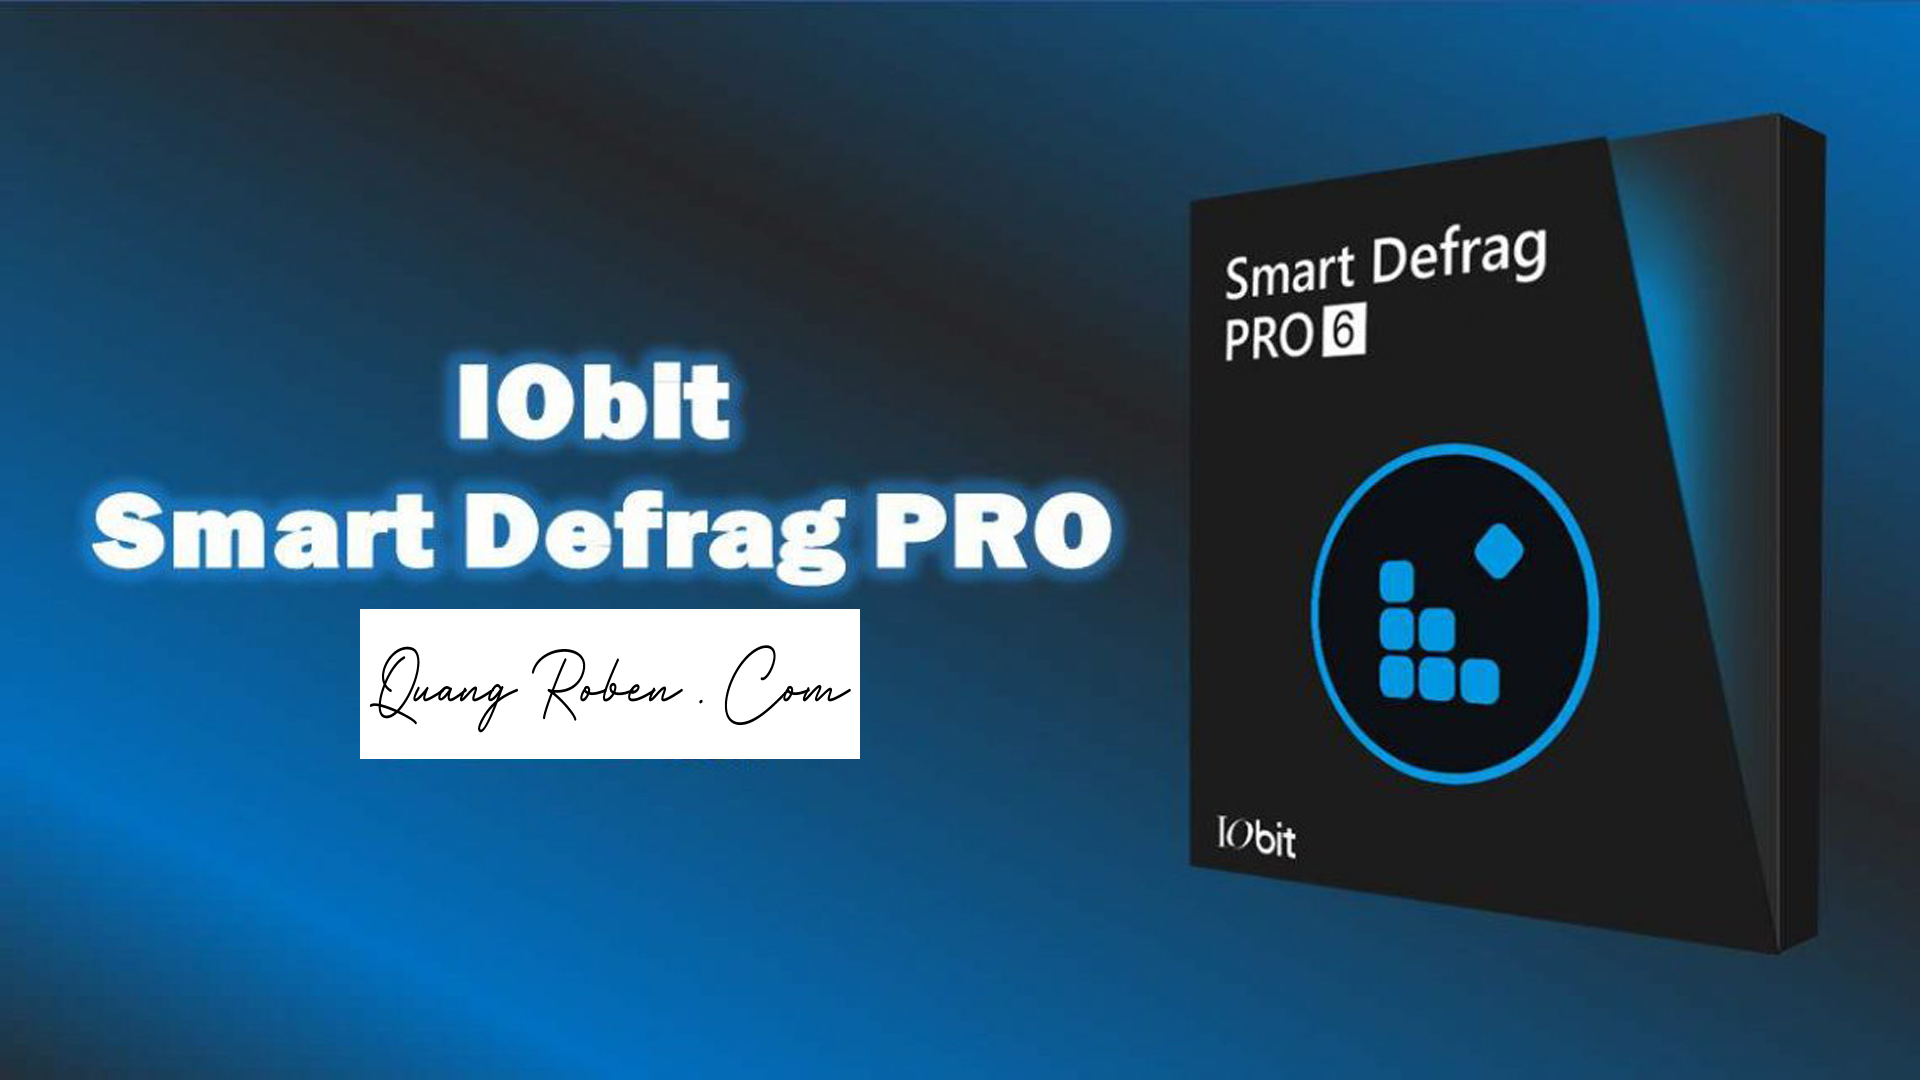 iobit smart defrag pro 7.4.0.114